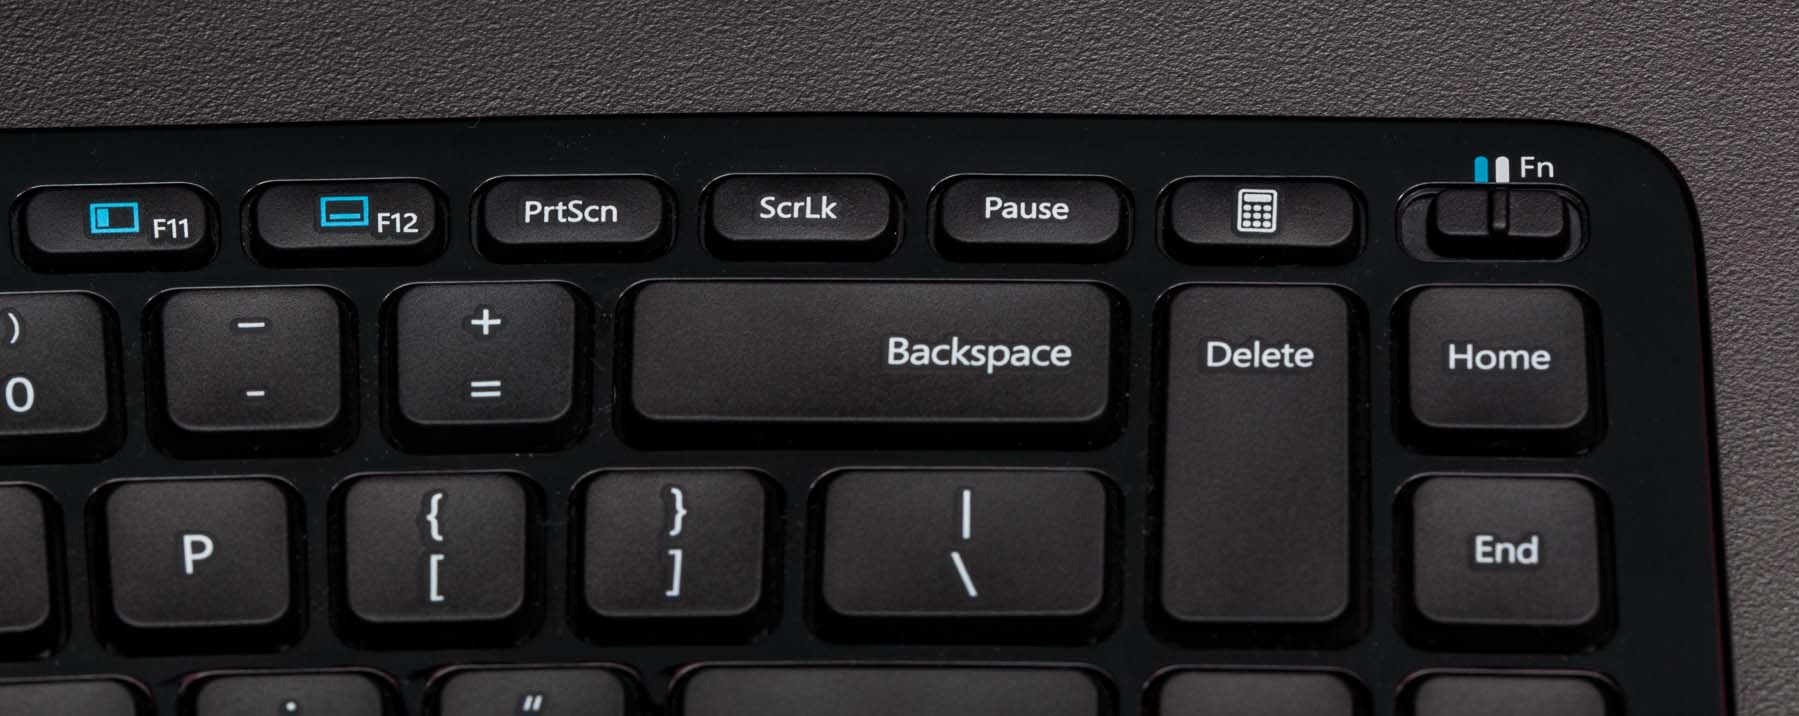 where is fn key on microsoft ergonomic keyboard